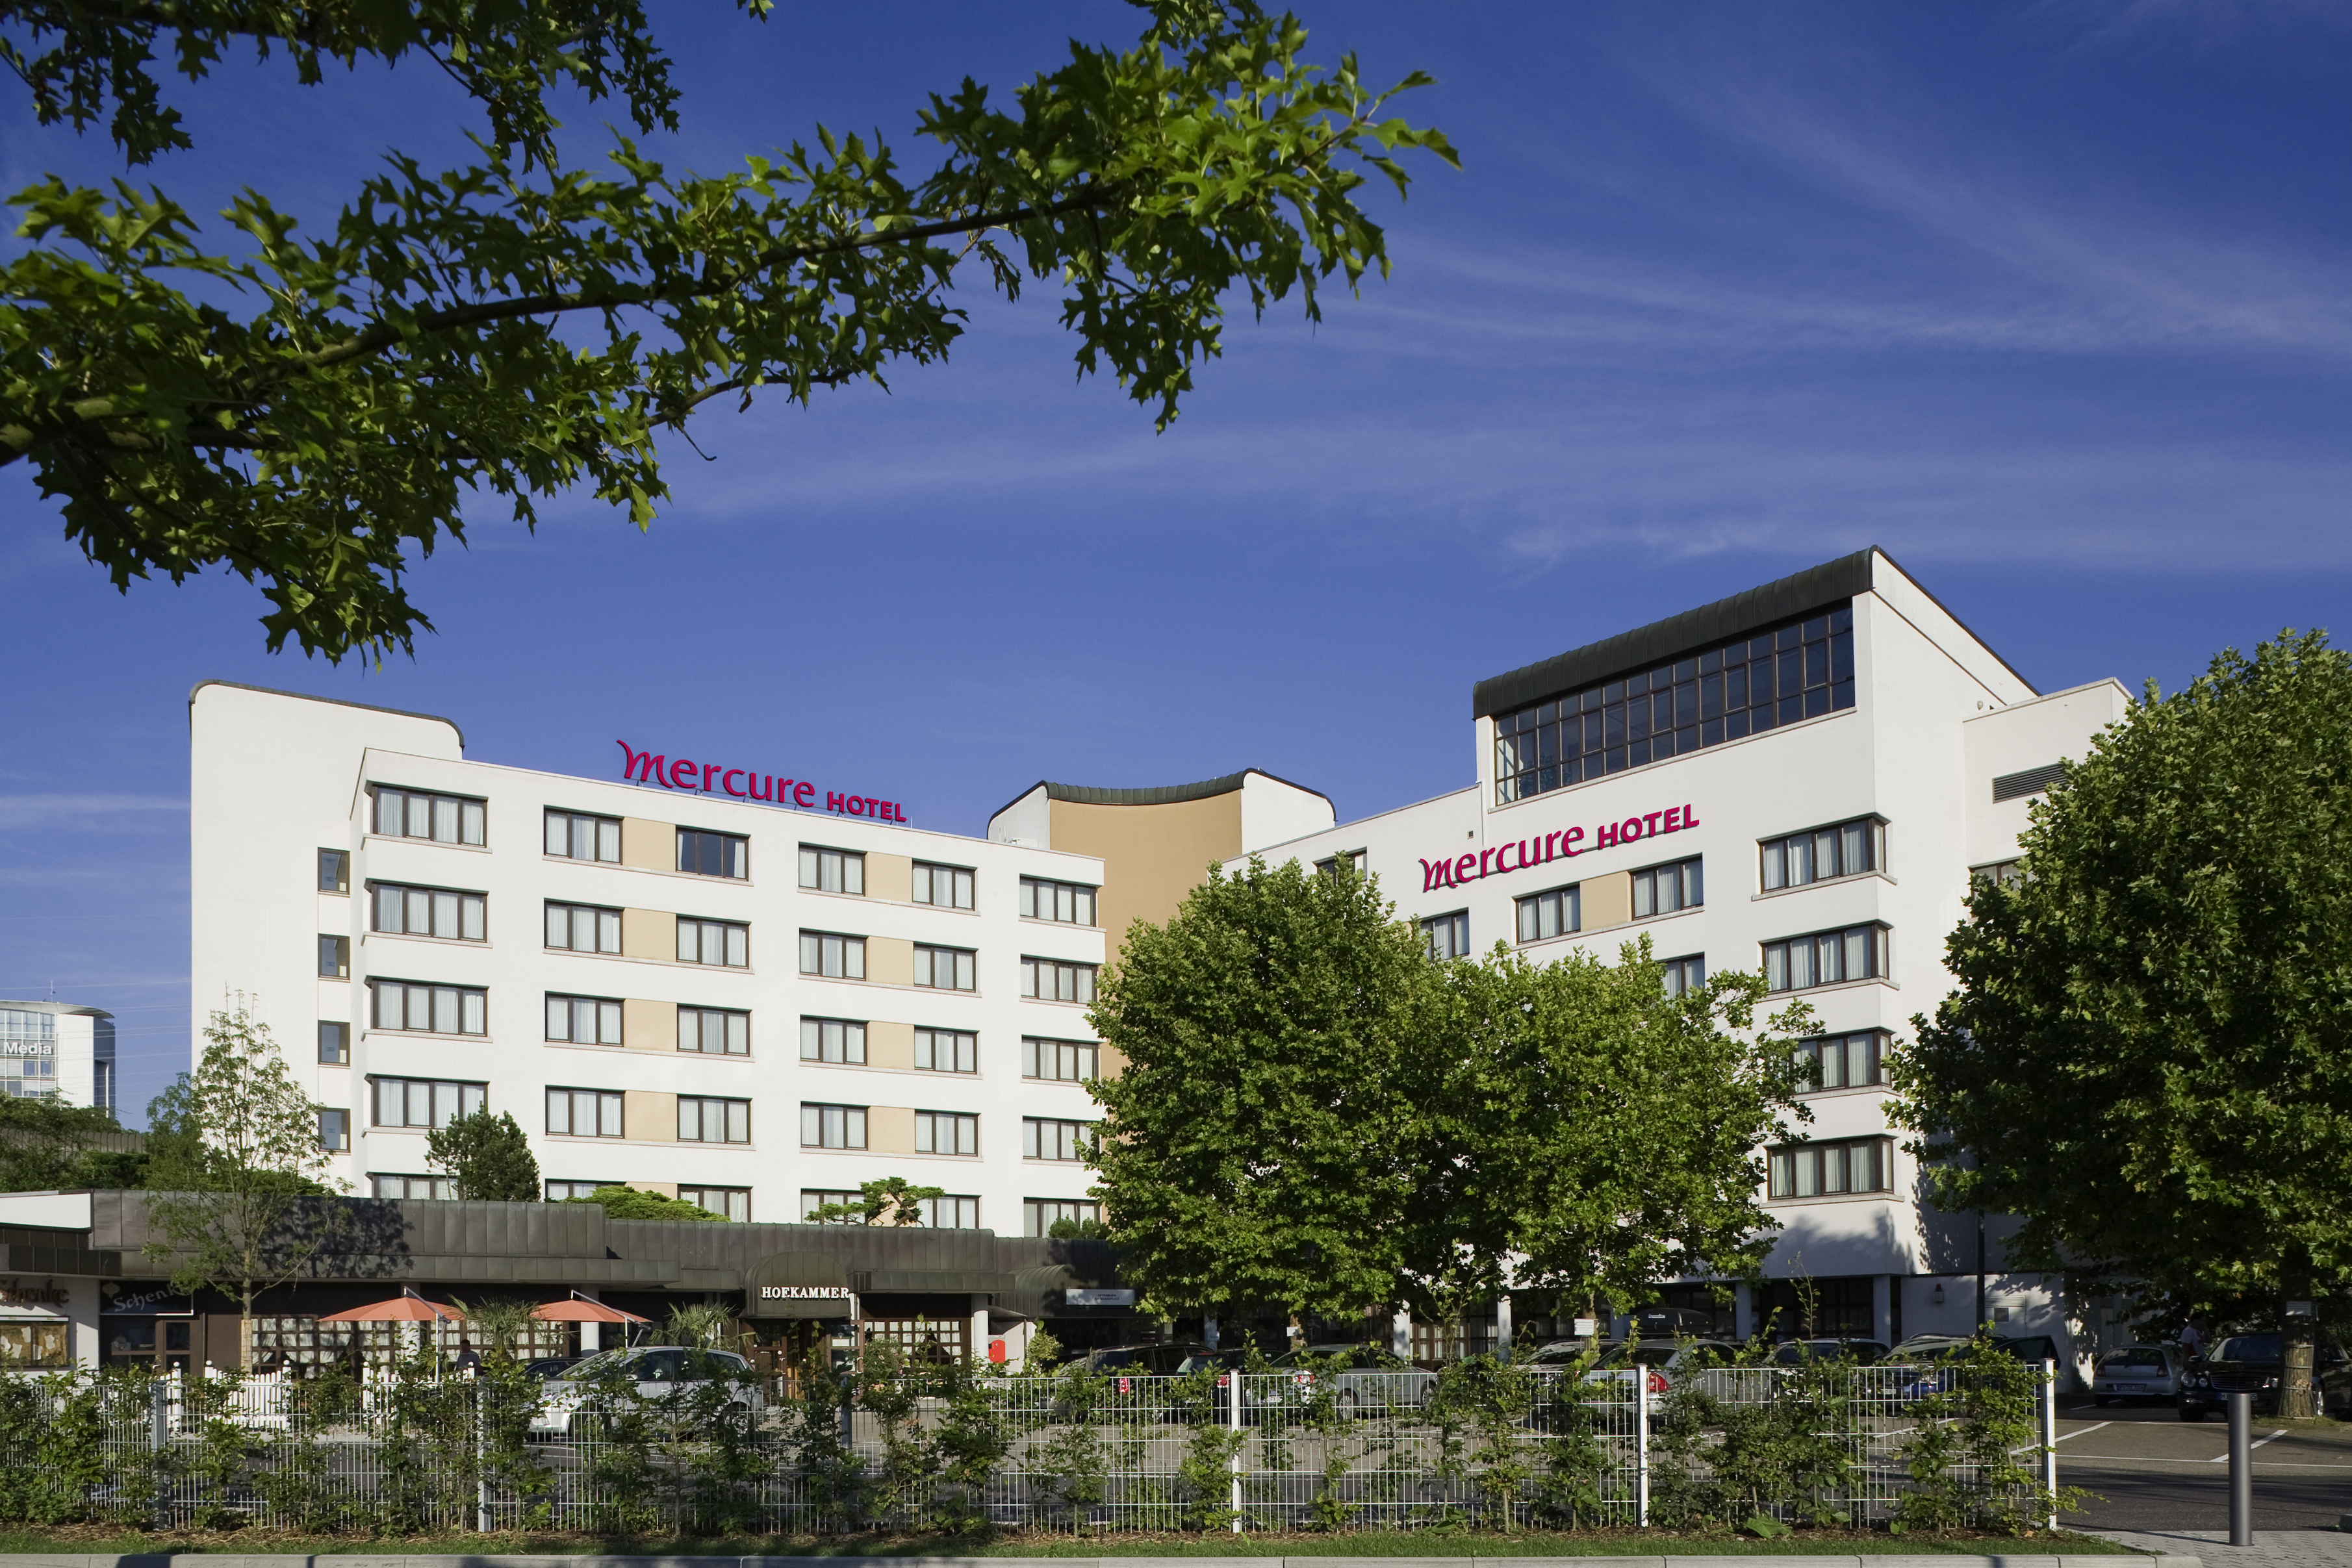 Mercure Hotel Offenburg am Messeplatz in Offenburg bei Marlen